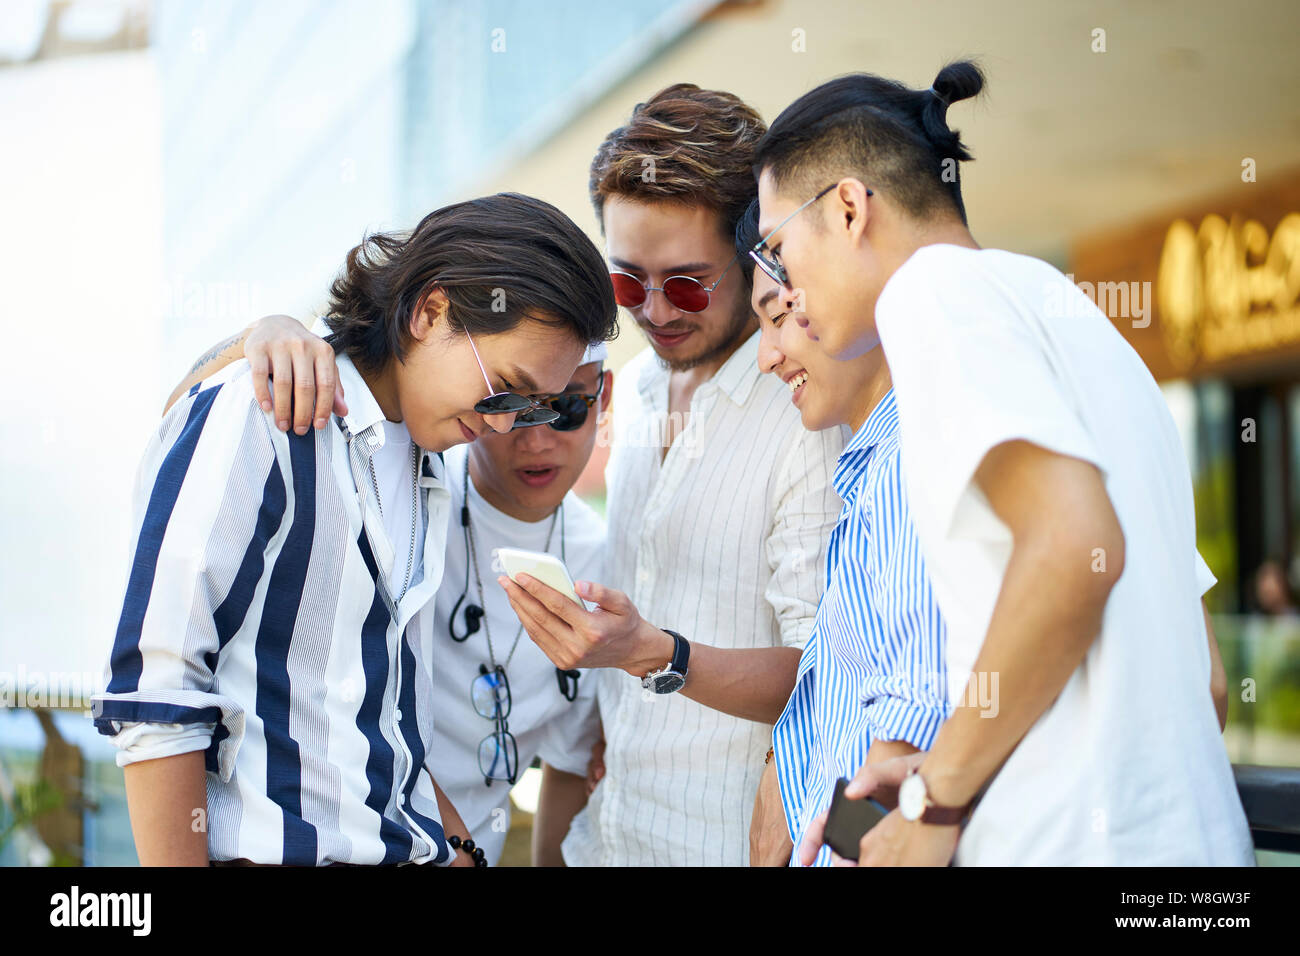 Les jeunes hommes adultes asiatiques utilisent les médias sociaux looking at mobile phone ensemble Banque D'Images